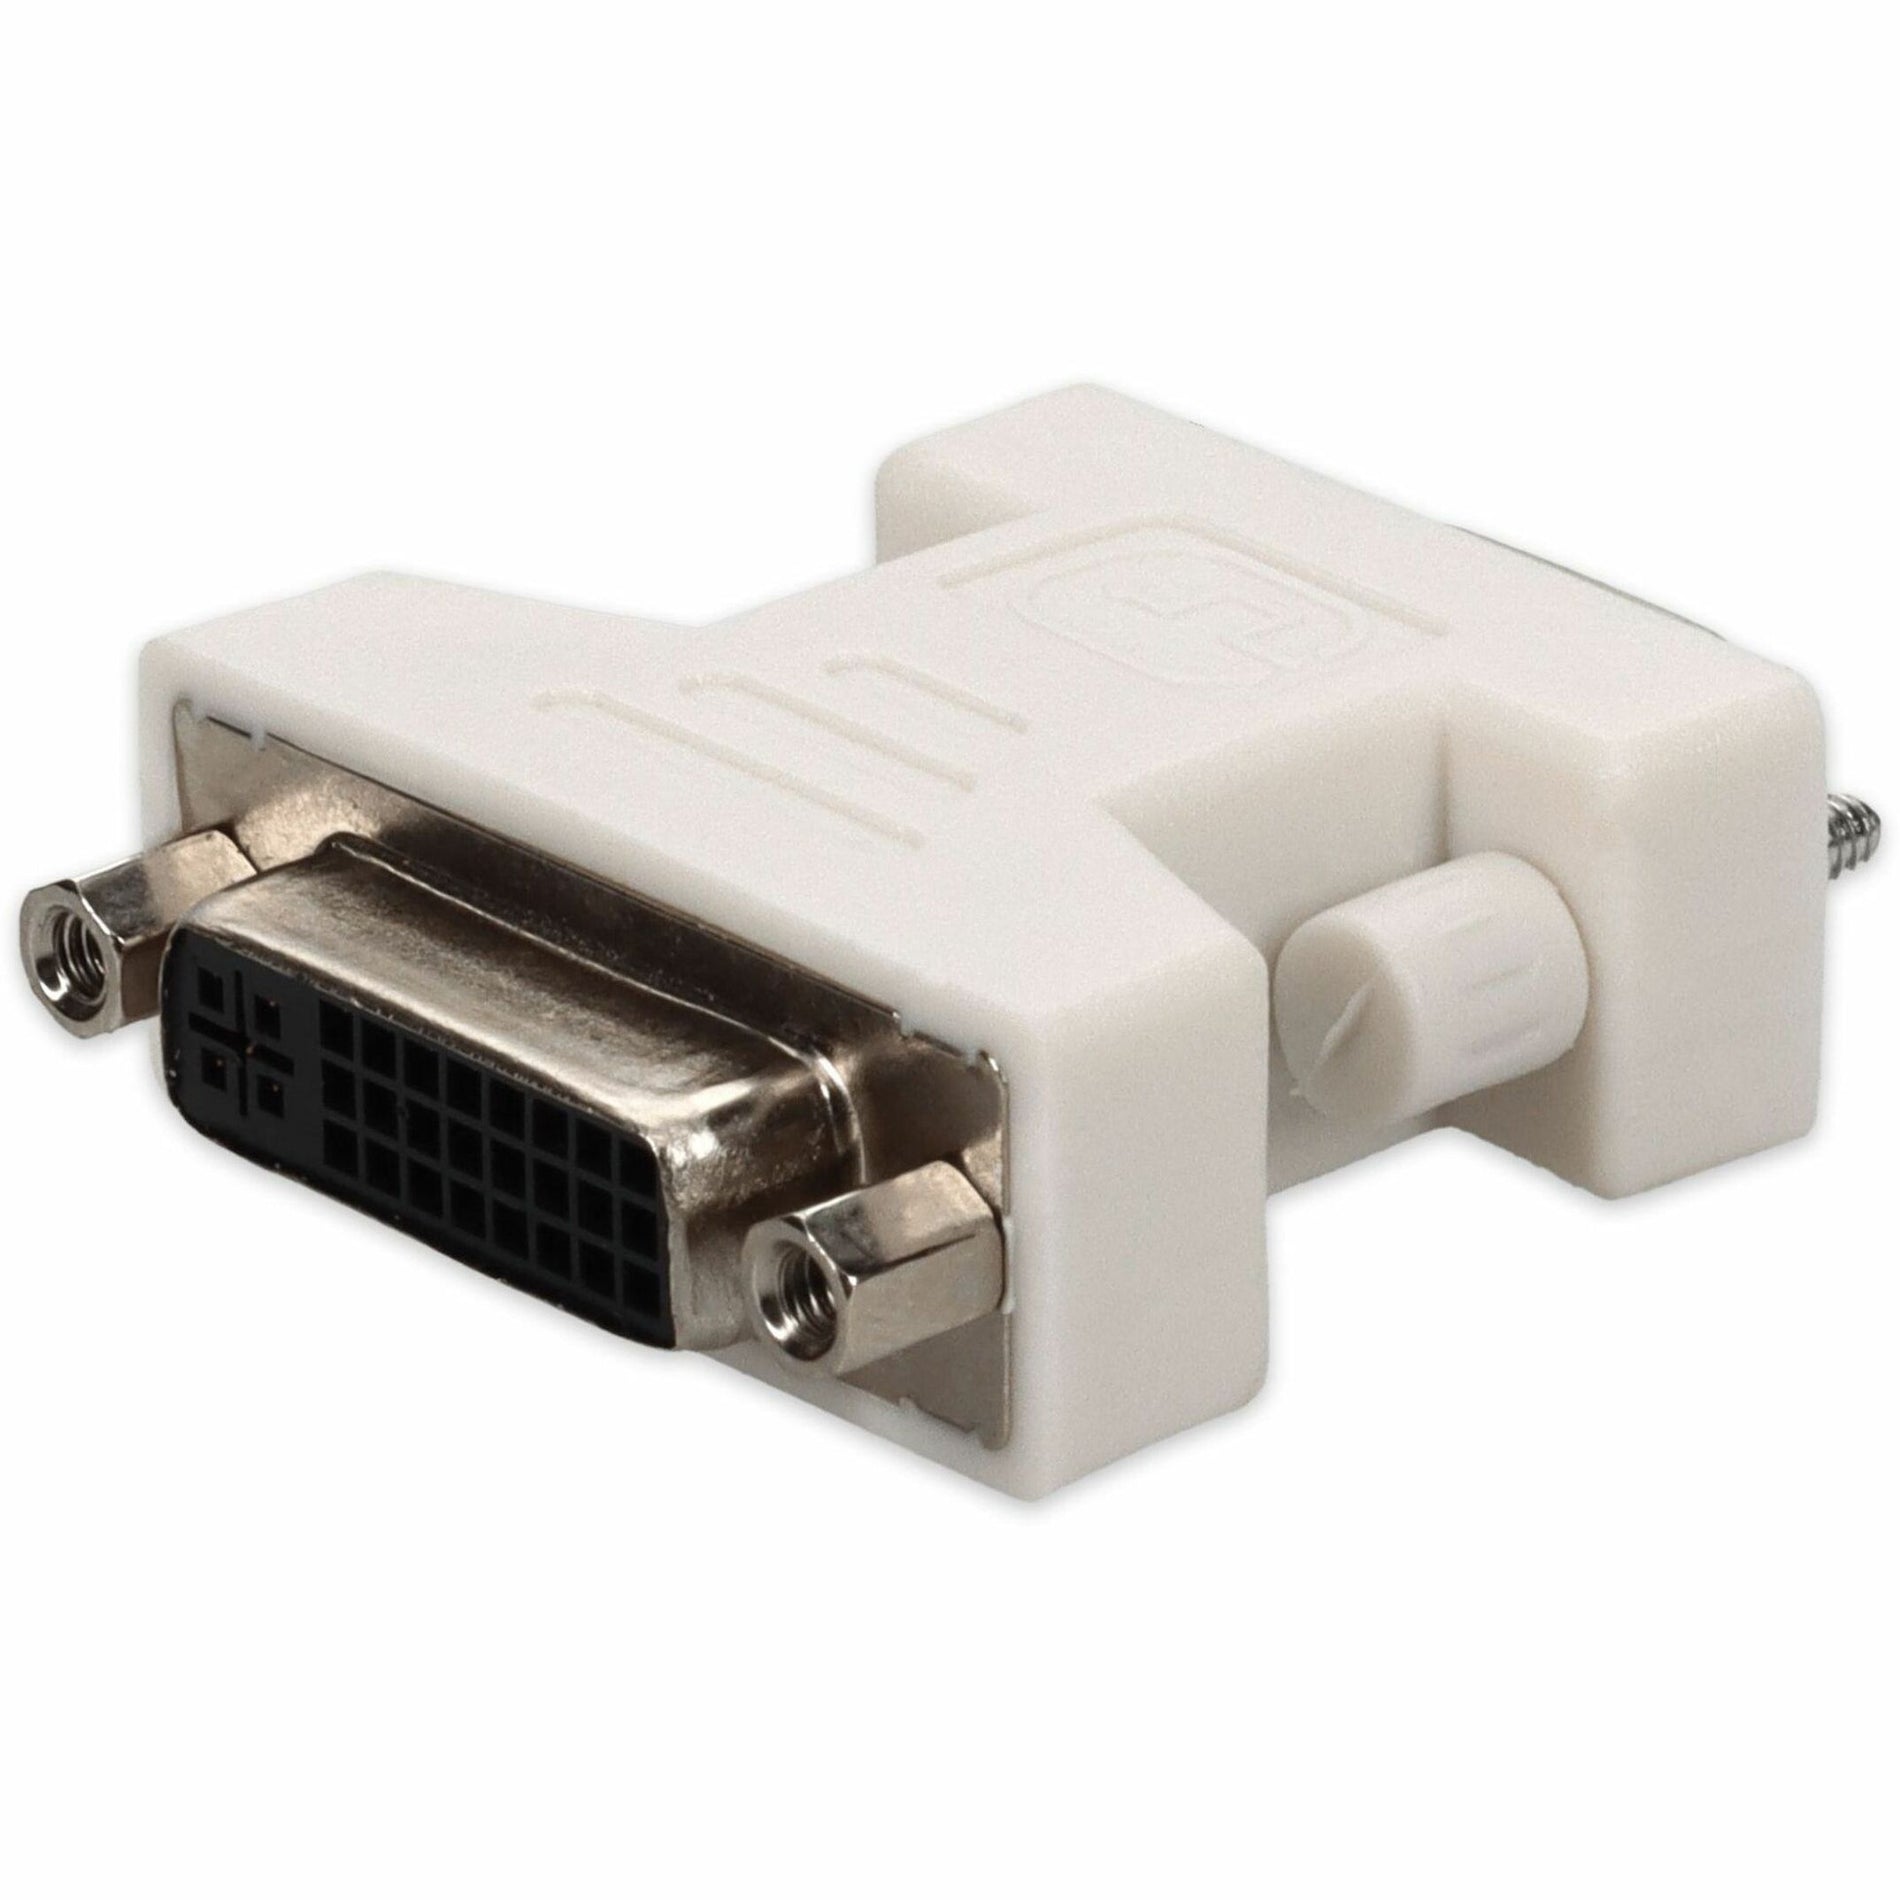 アドオン VGA2DVIW VGA/DVI ビデオアダプタ、ホワイト、DVI-D 互換 M/F